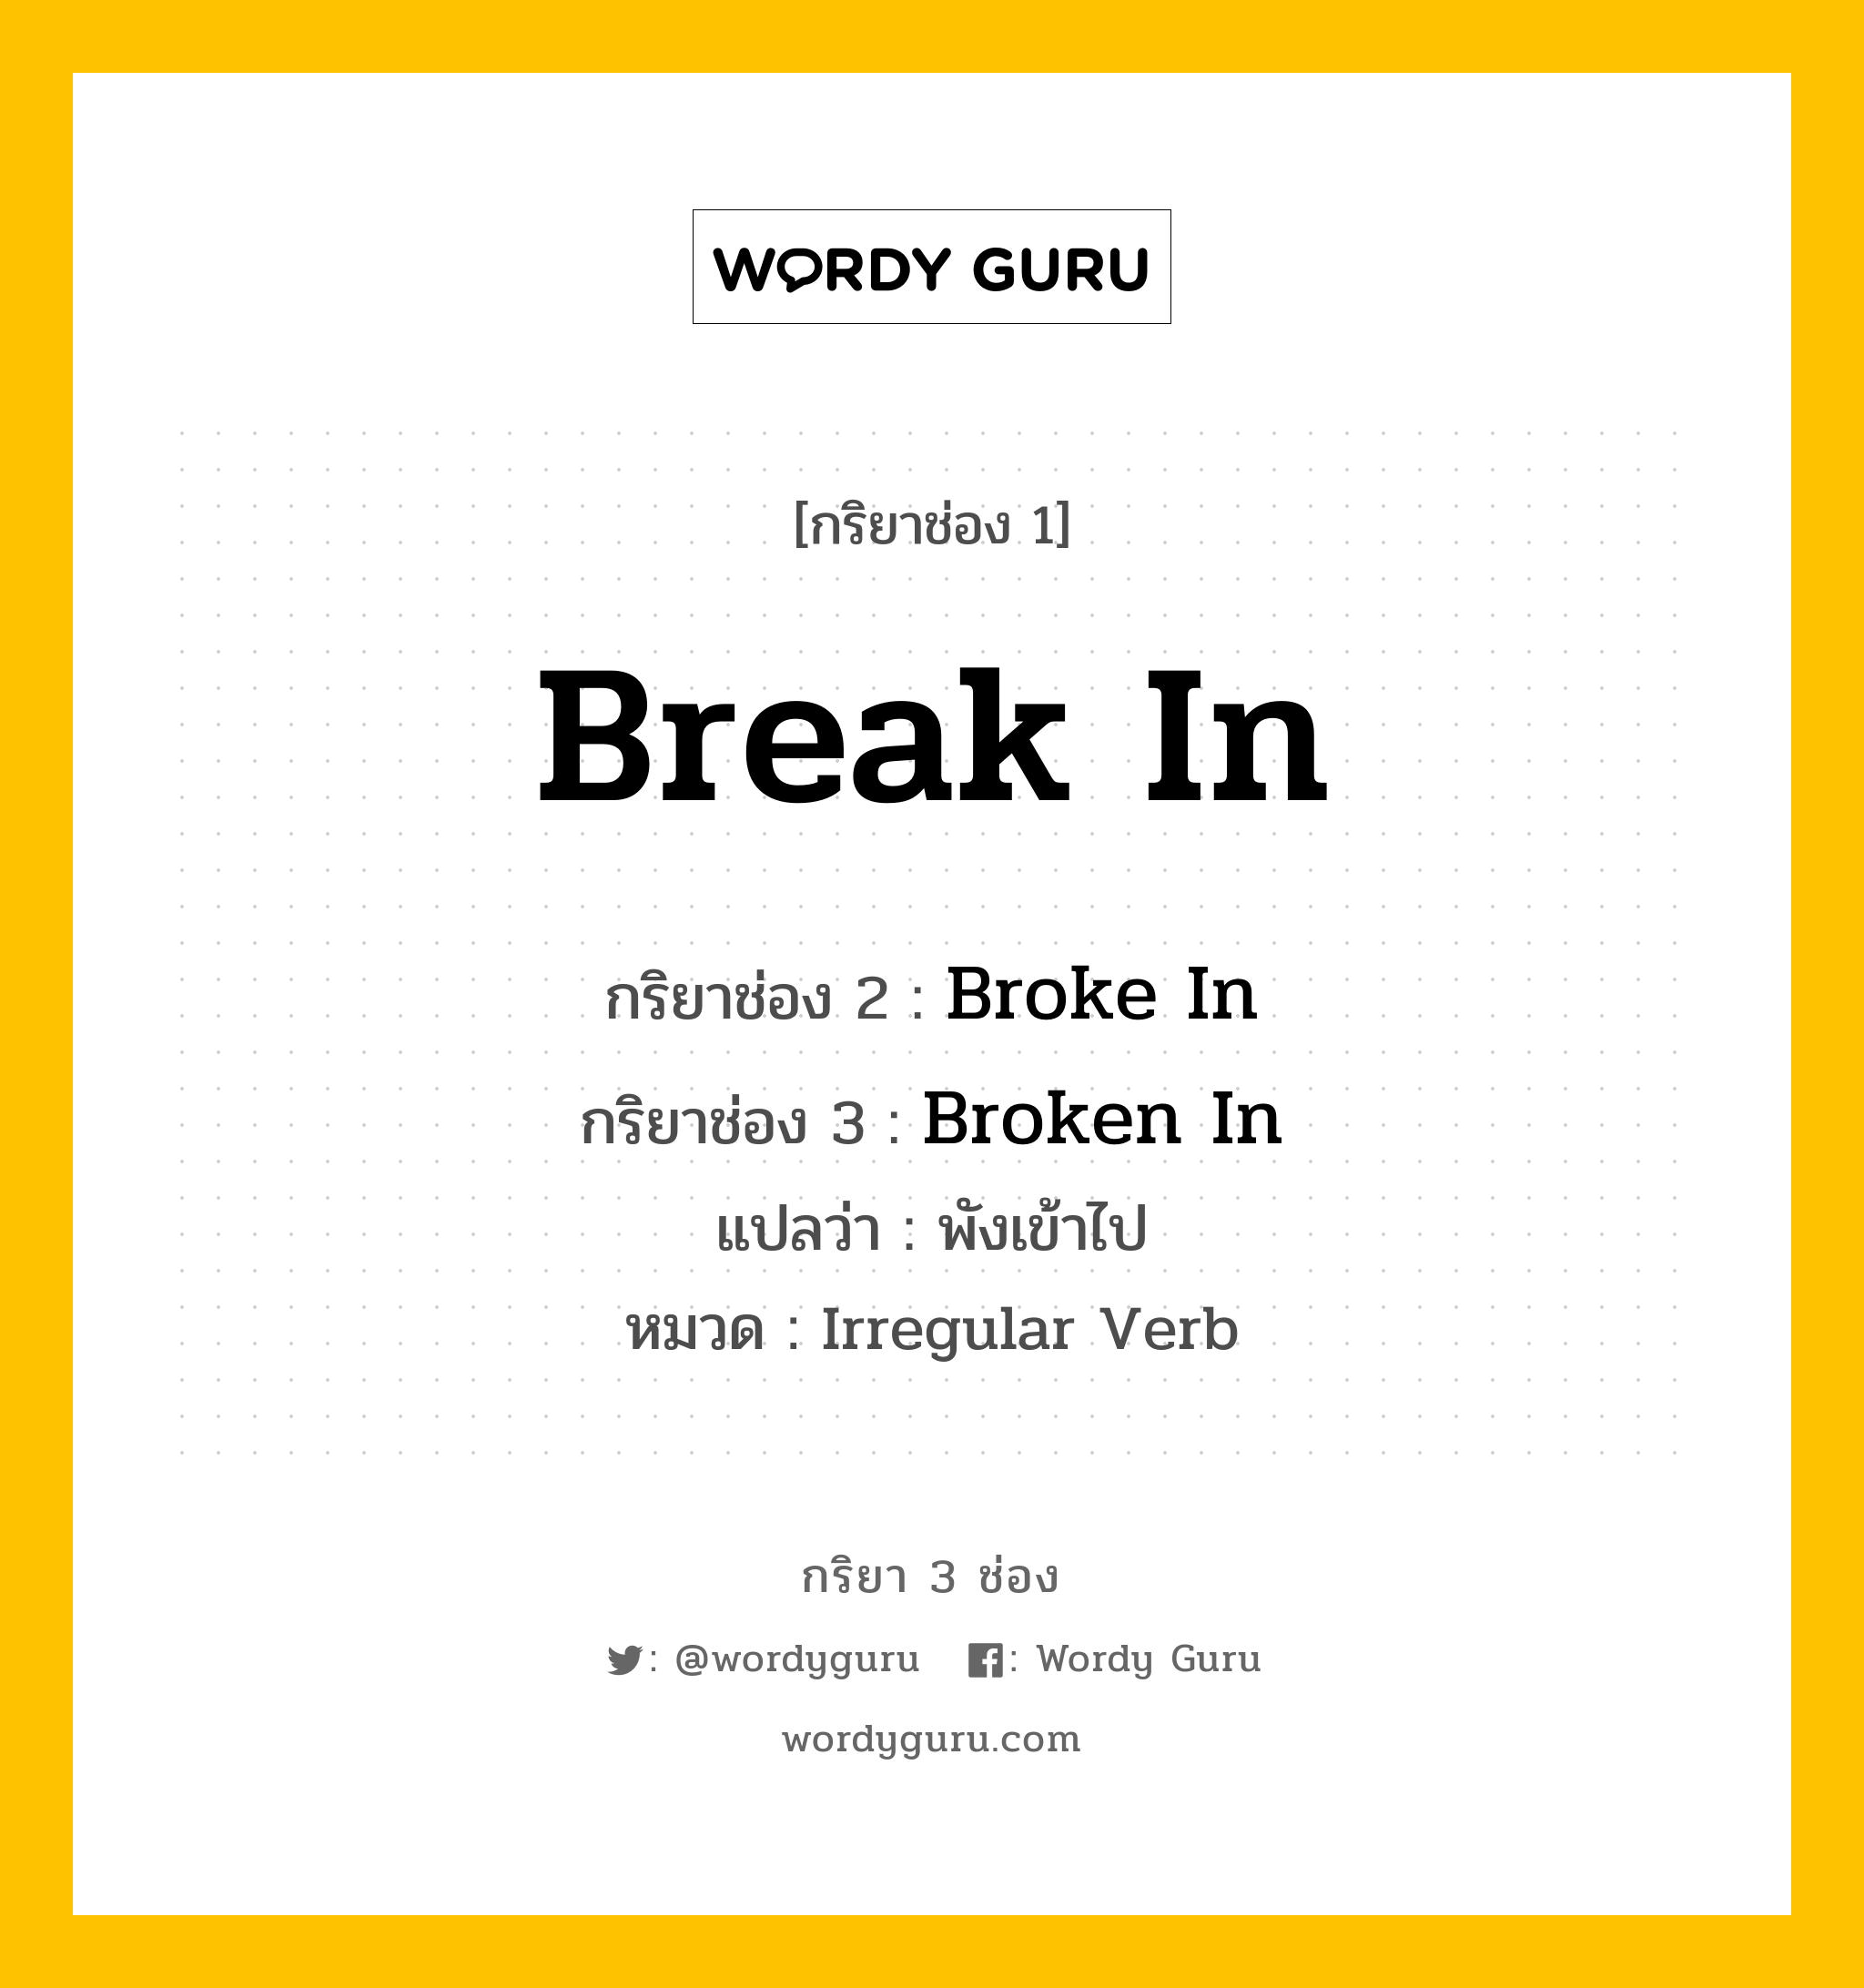 Break In มีกริยา 3 ช่องอะไรบ้าง? คำศัพท์ในกลุ่มประเภท Irregular Verb, กริยาช่อง 1 Break In กริยาช่อง 2 Broke In กริยาช่อง 3 Broken In แปลว่า พังเข้าไป หมวด Irregular Verb หมวด Irregular Verb